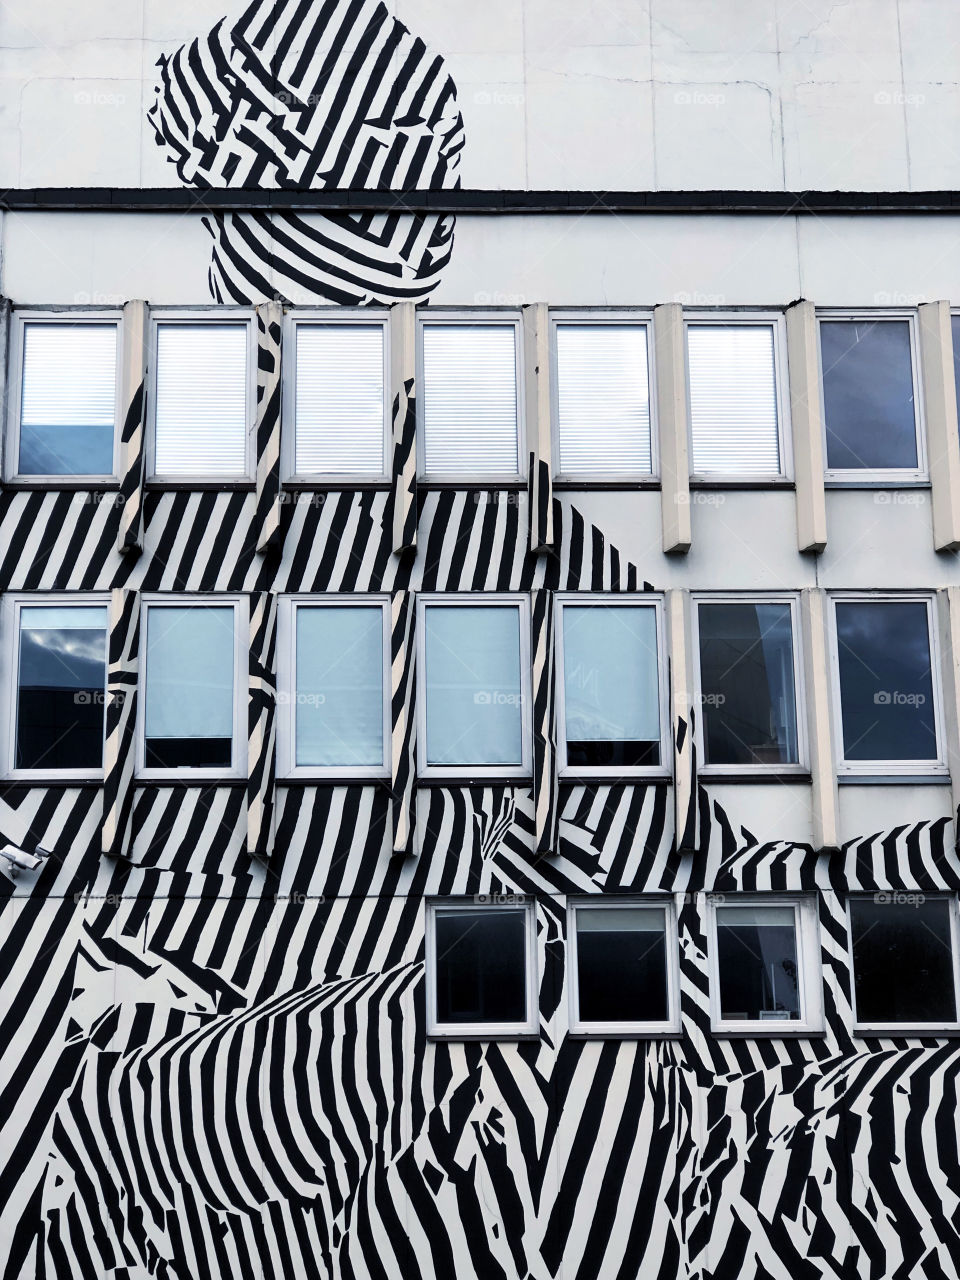 Zebra building